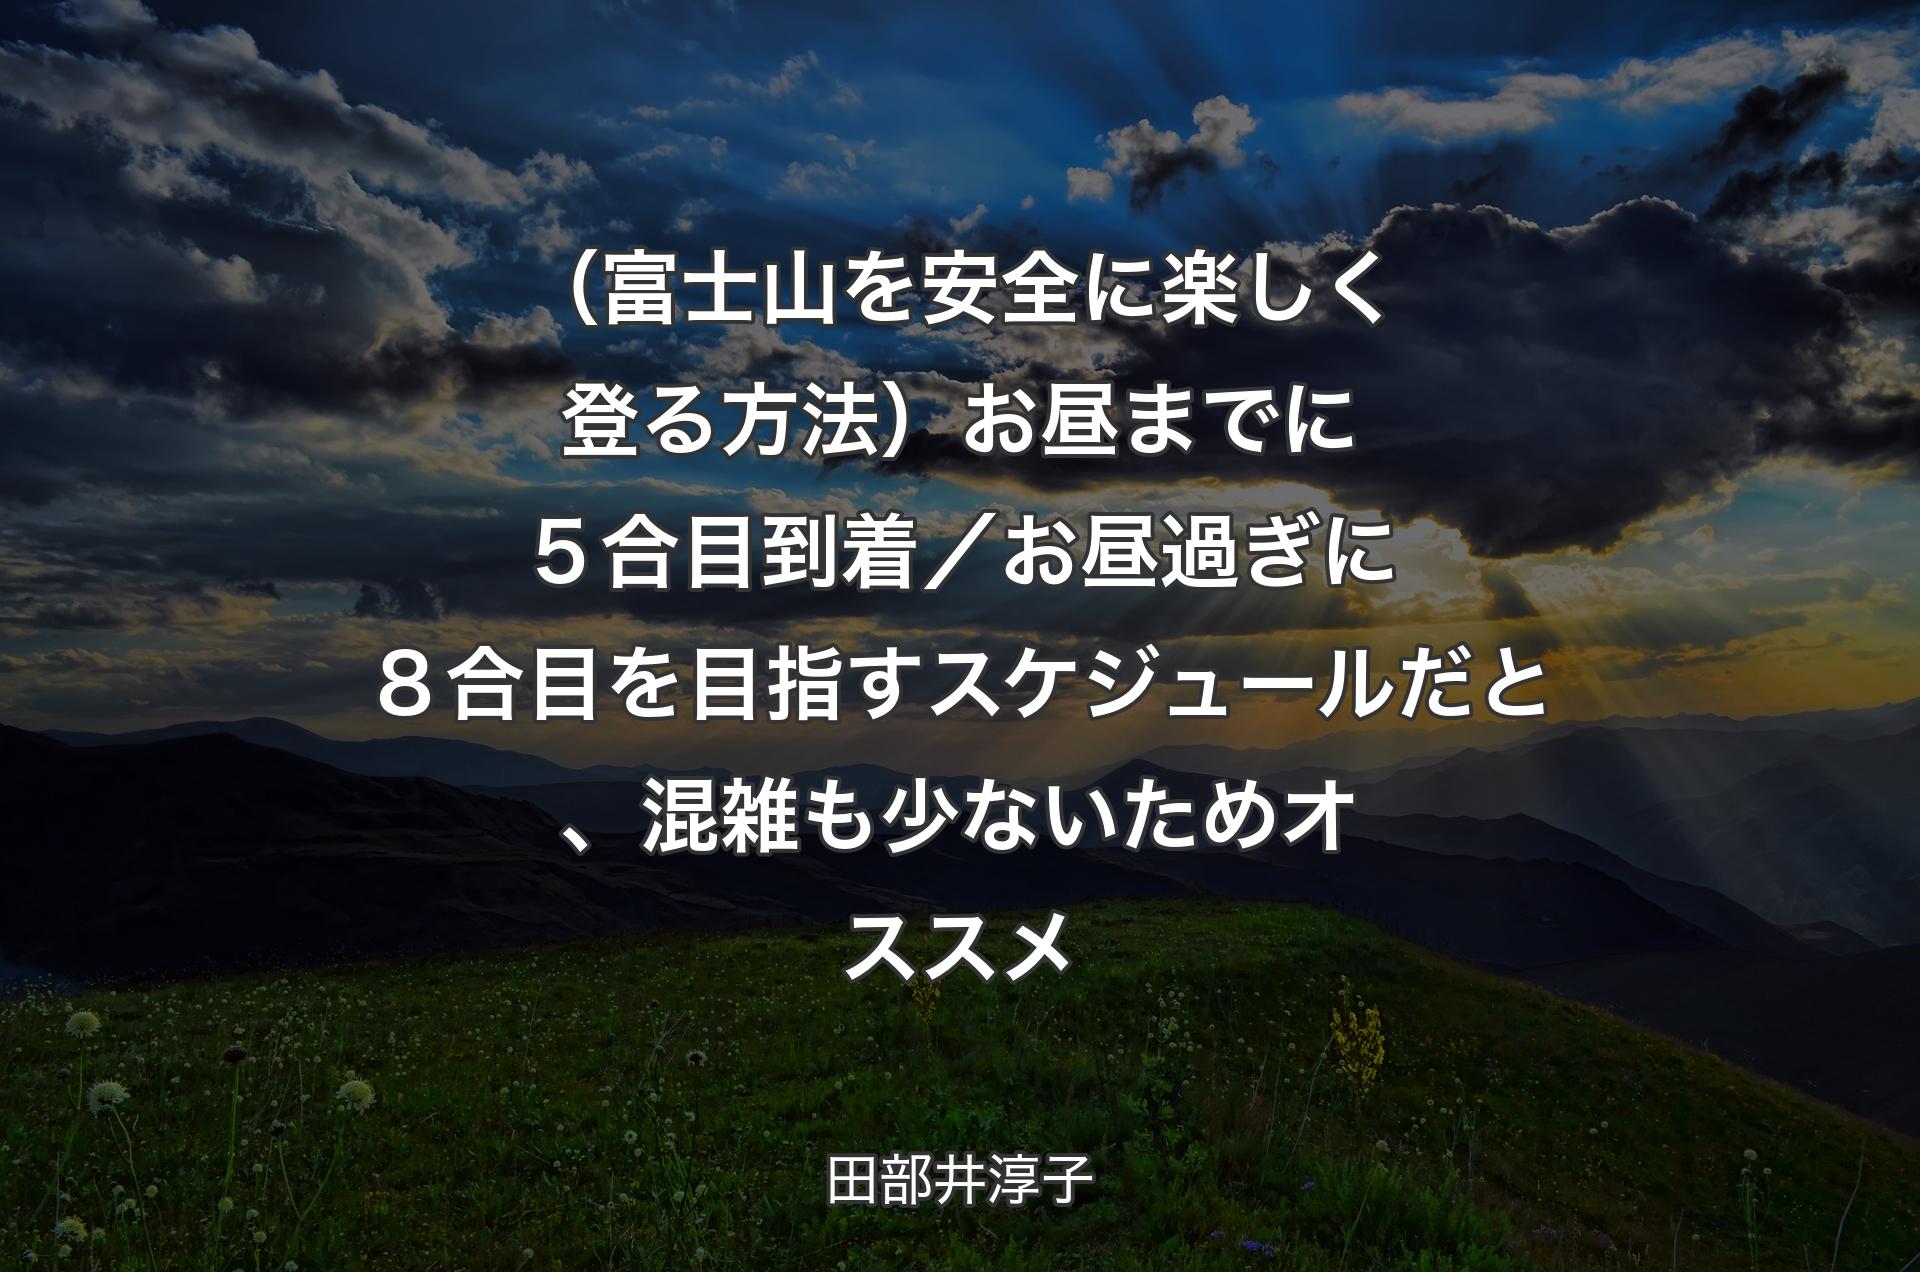 （富士山を安全に楽しく登る方法）お昼までに５合目到着／お昼過ぎに８合目を目指すスケジュールだと、混雑も少ないためオススメ - 田部井淳子